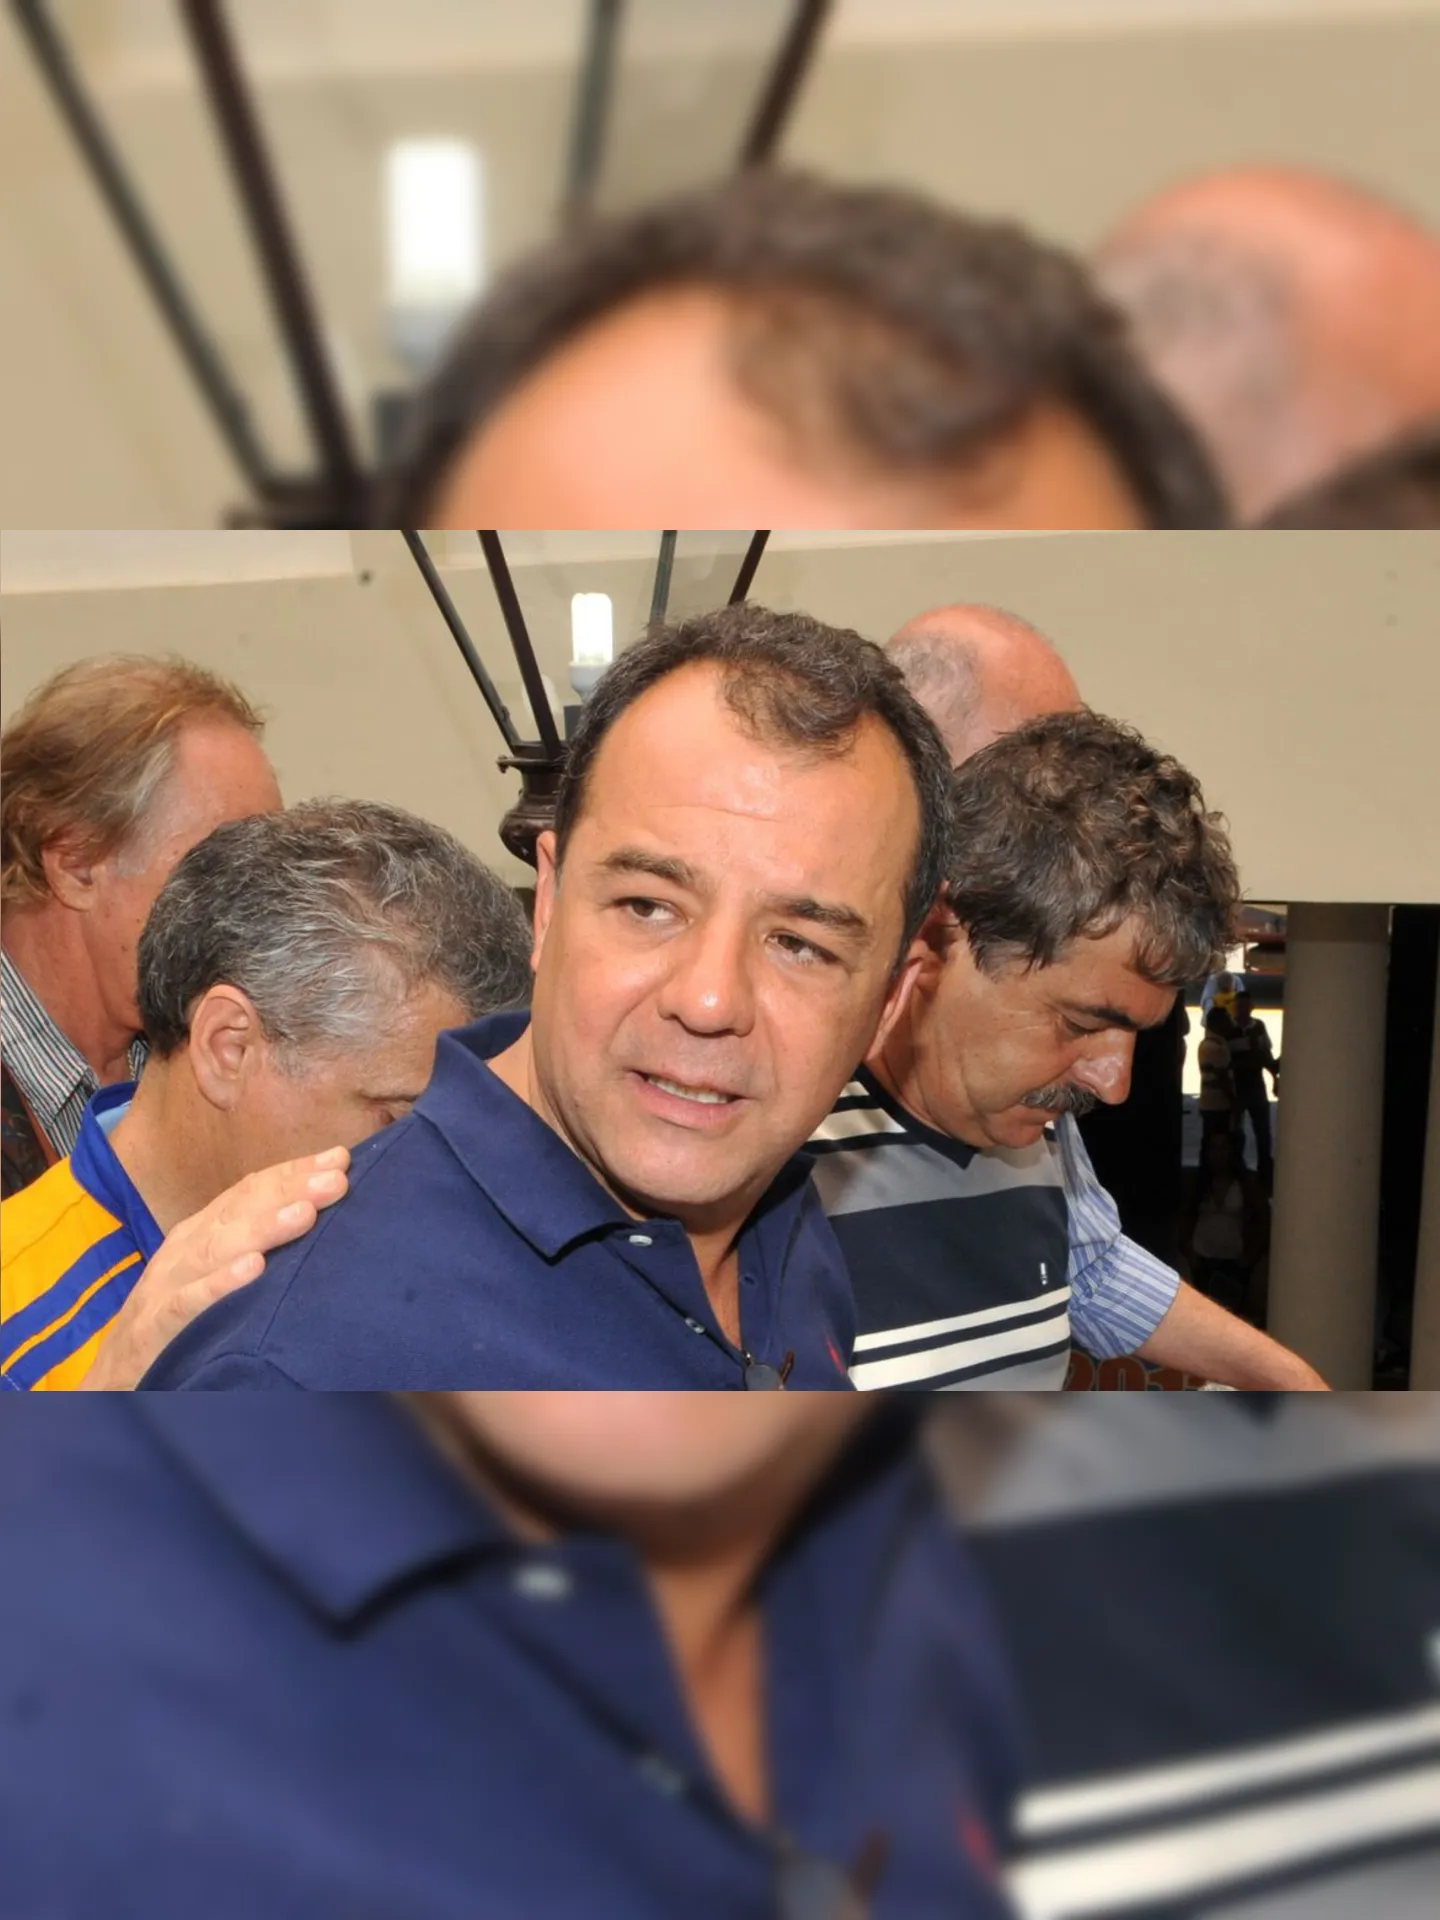 Sérgio Cabral é condenado por corrupção, lavagem de dinheiro e outros crimes